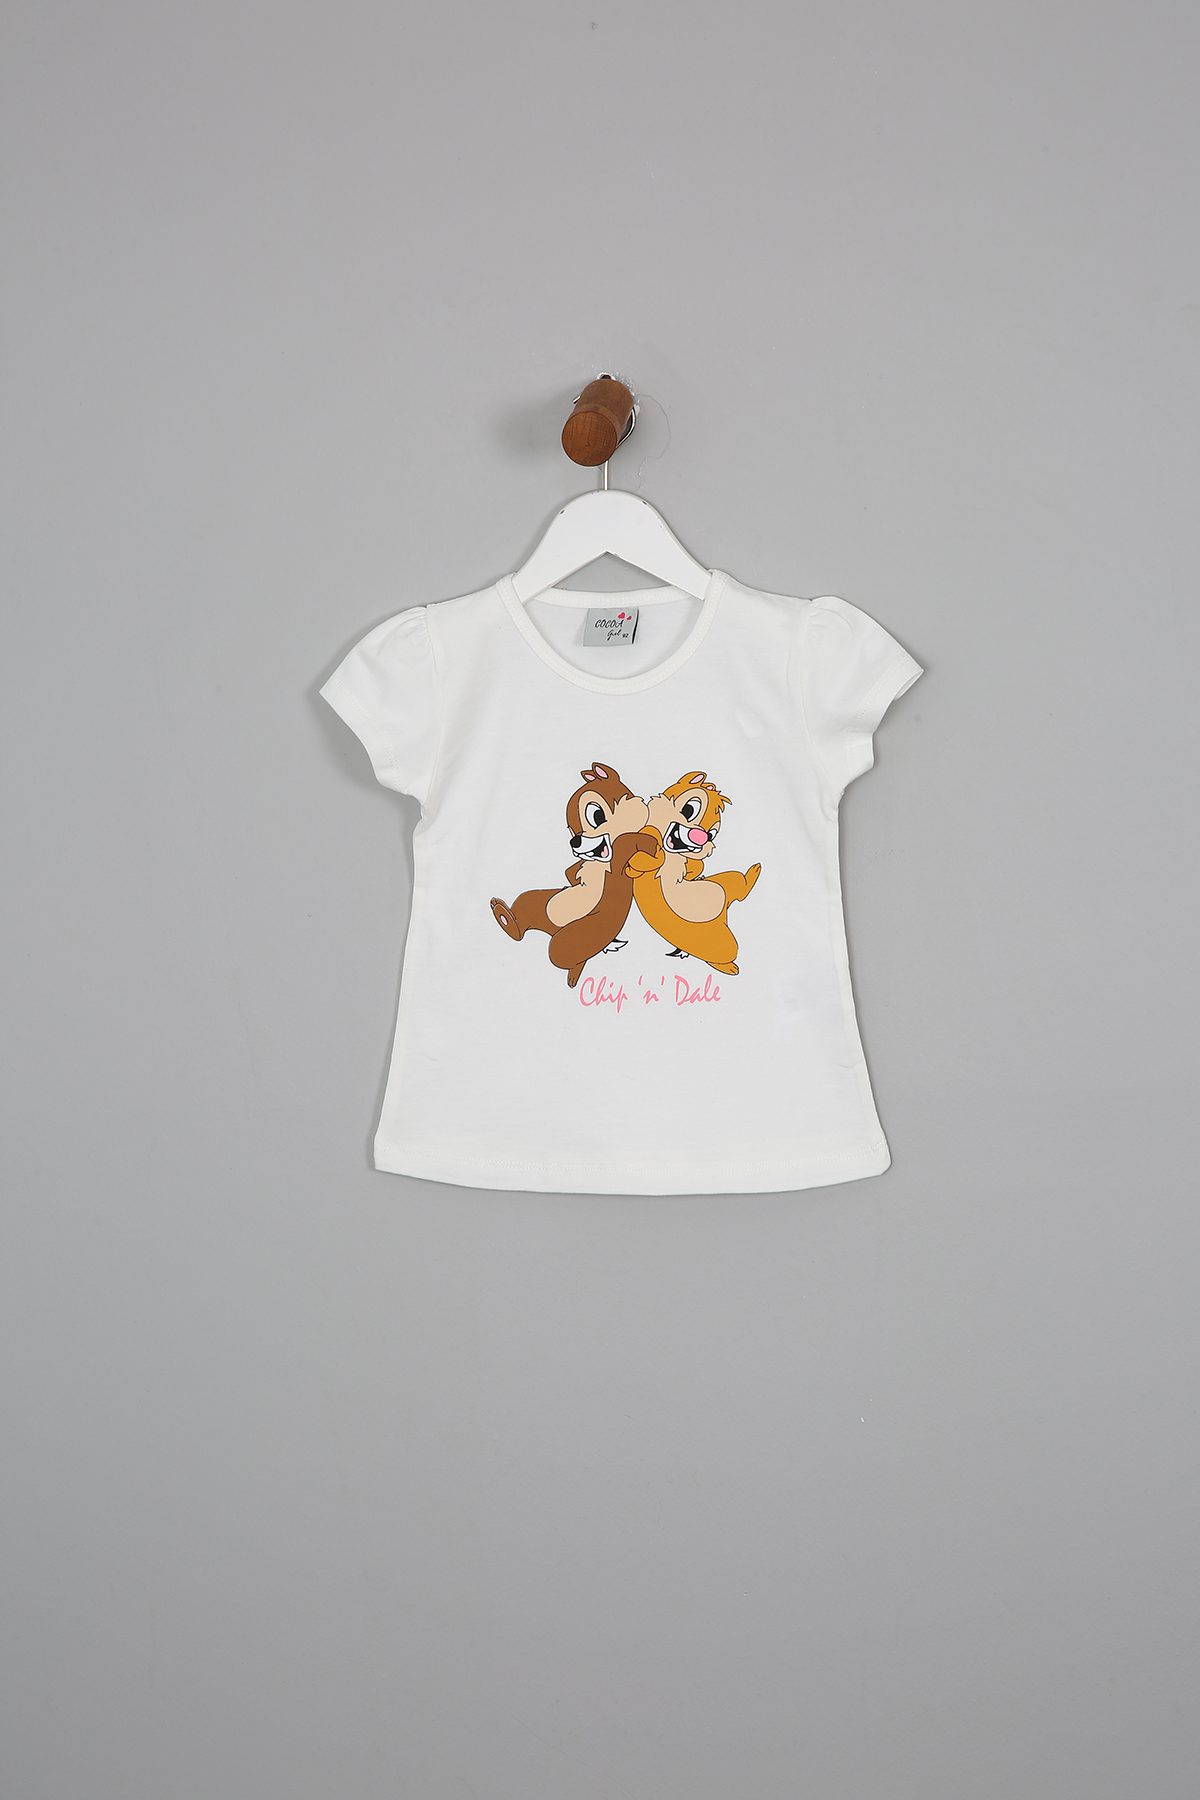 Girl Squirrel Brothers Printed T-Shirt / 2-3 Y | 3-4 Y | 4-5 Y | 5-6 Y - Kids Fashion Turkey